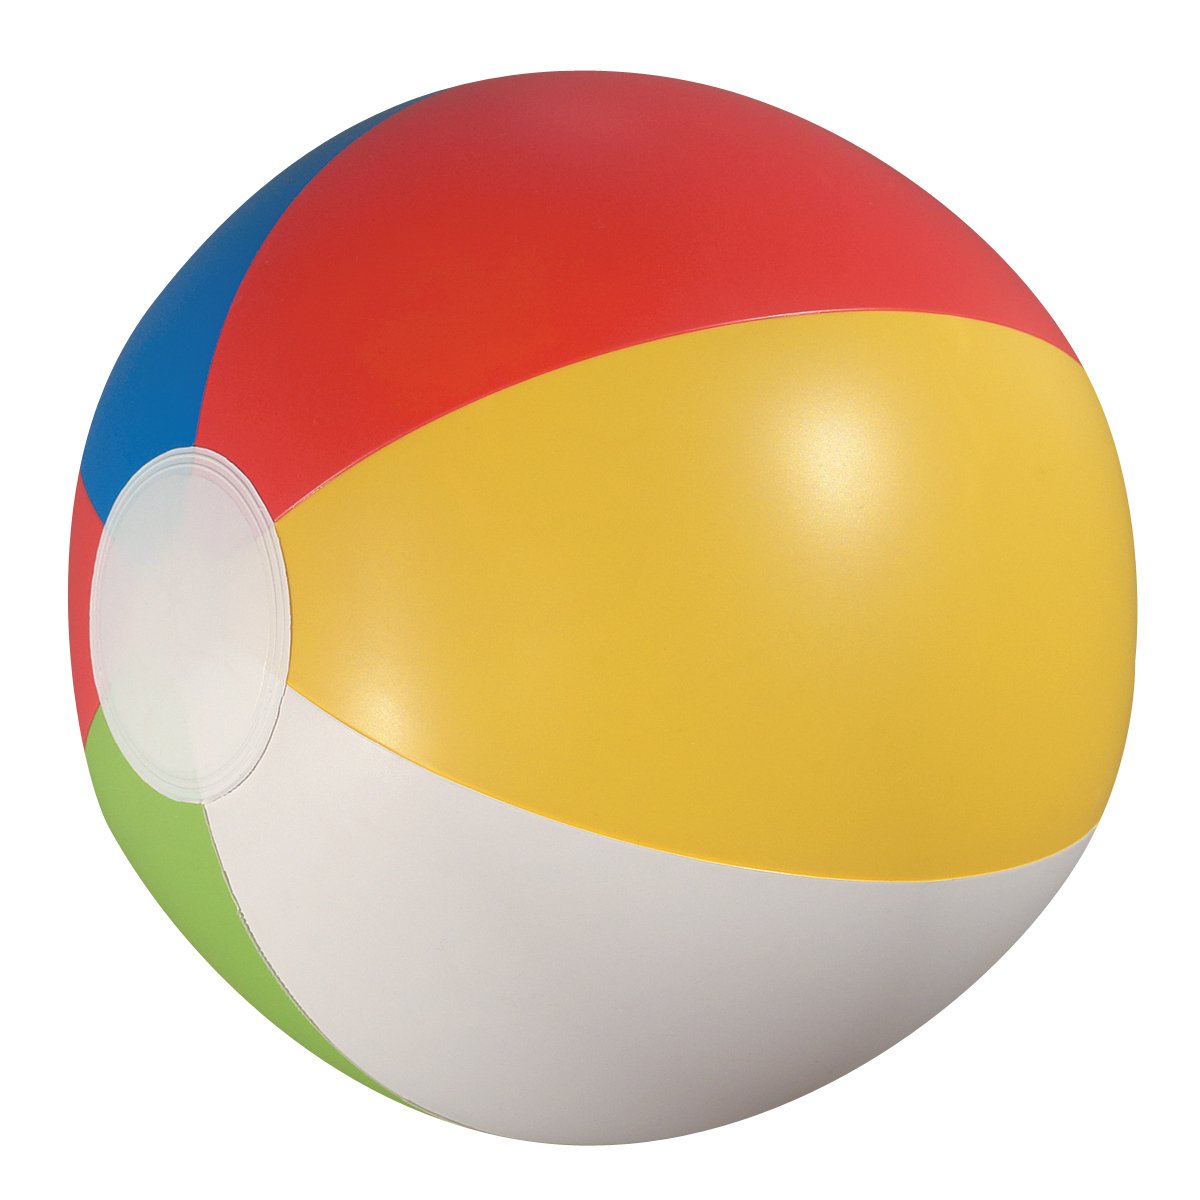 Картинка мяча для детей на прозрачном фоне. Мяч. Мяч пляжный. Мячики для детей. Игрушка мяч.